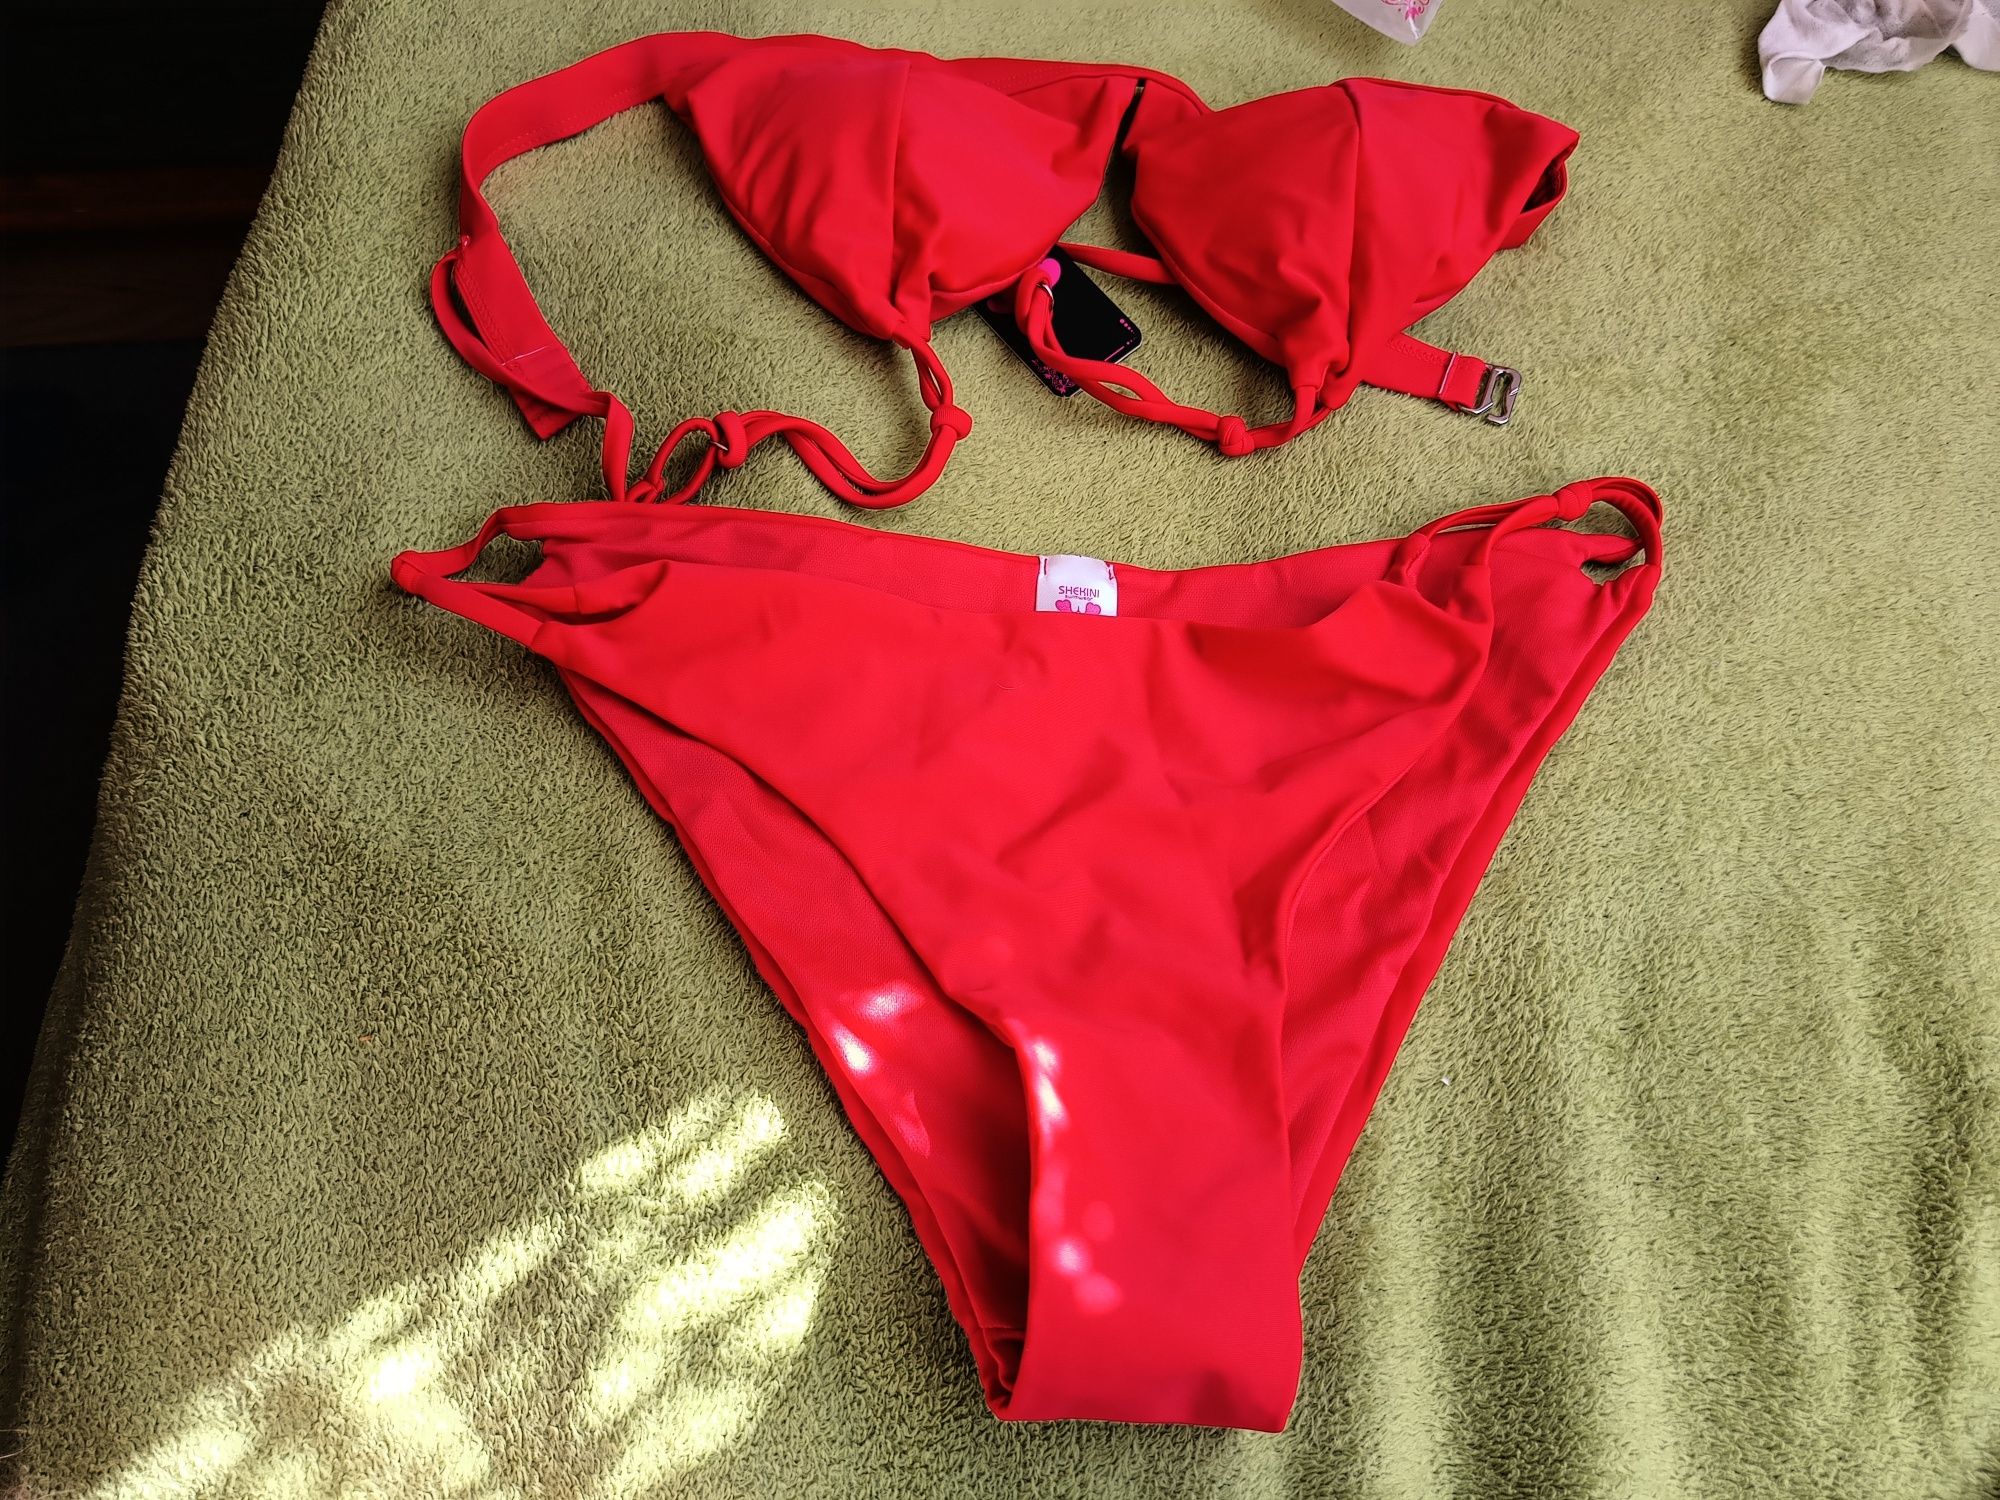 Strój kąpielowy Shekini dwuczęściowy rozmiar Xl kolor czerwony